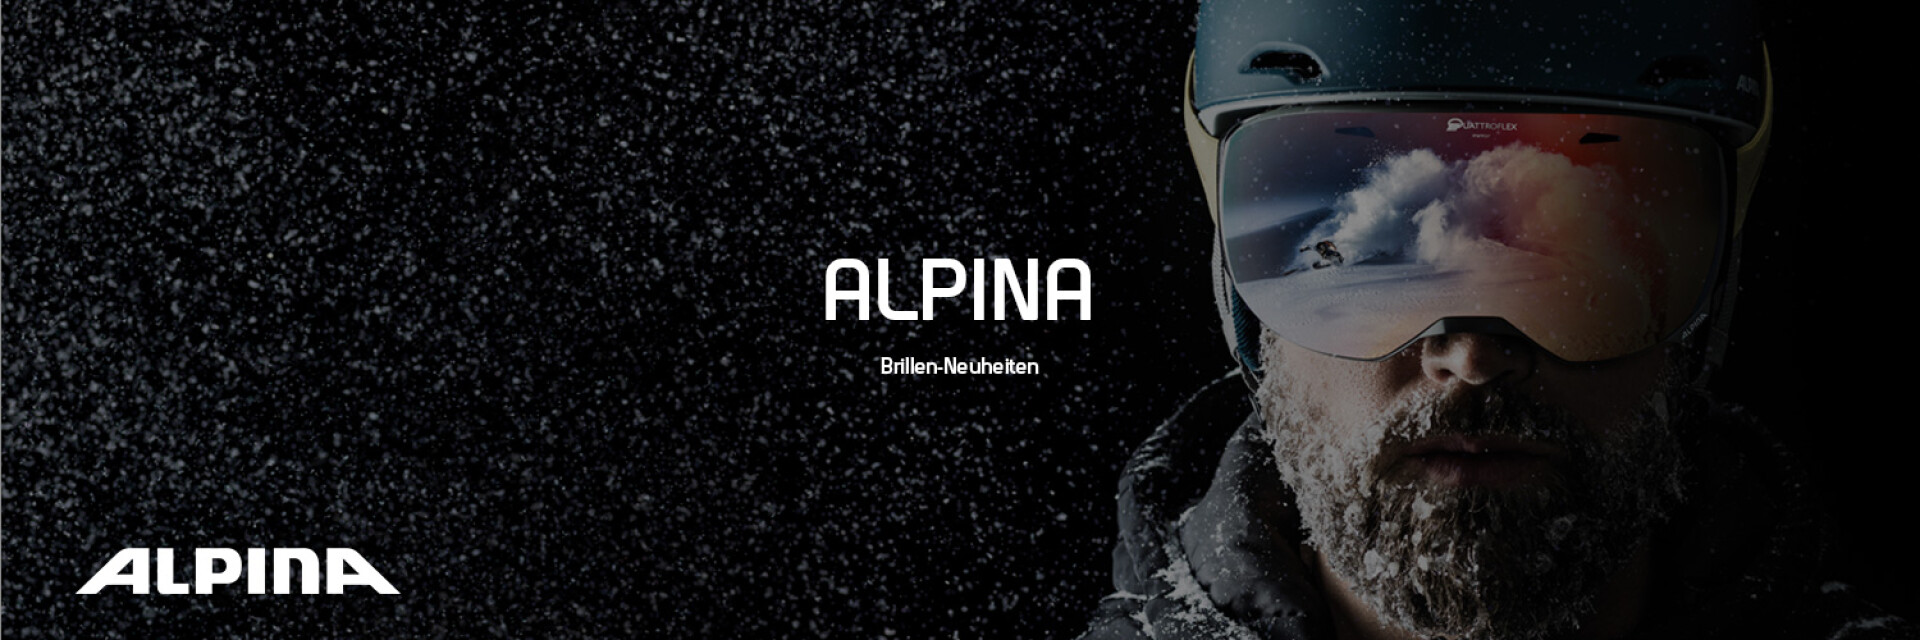 Alpina Ski-Brillen